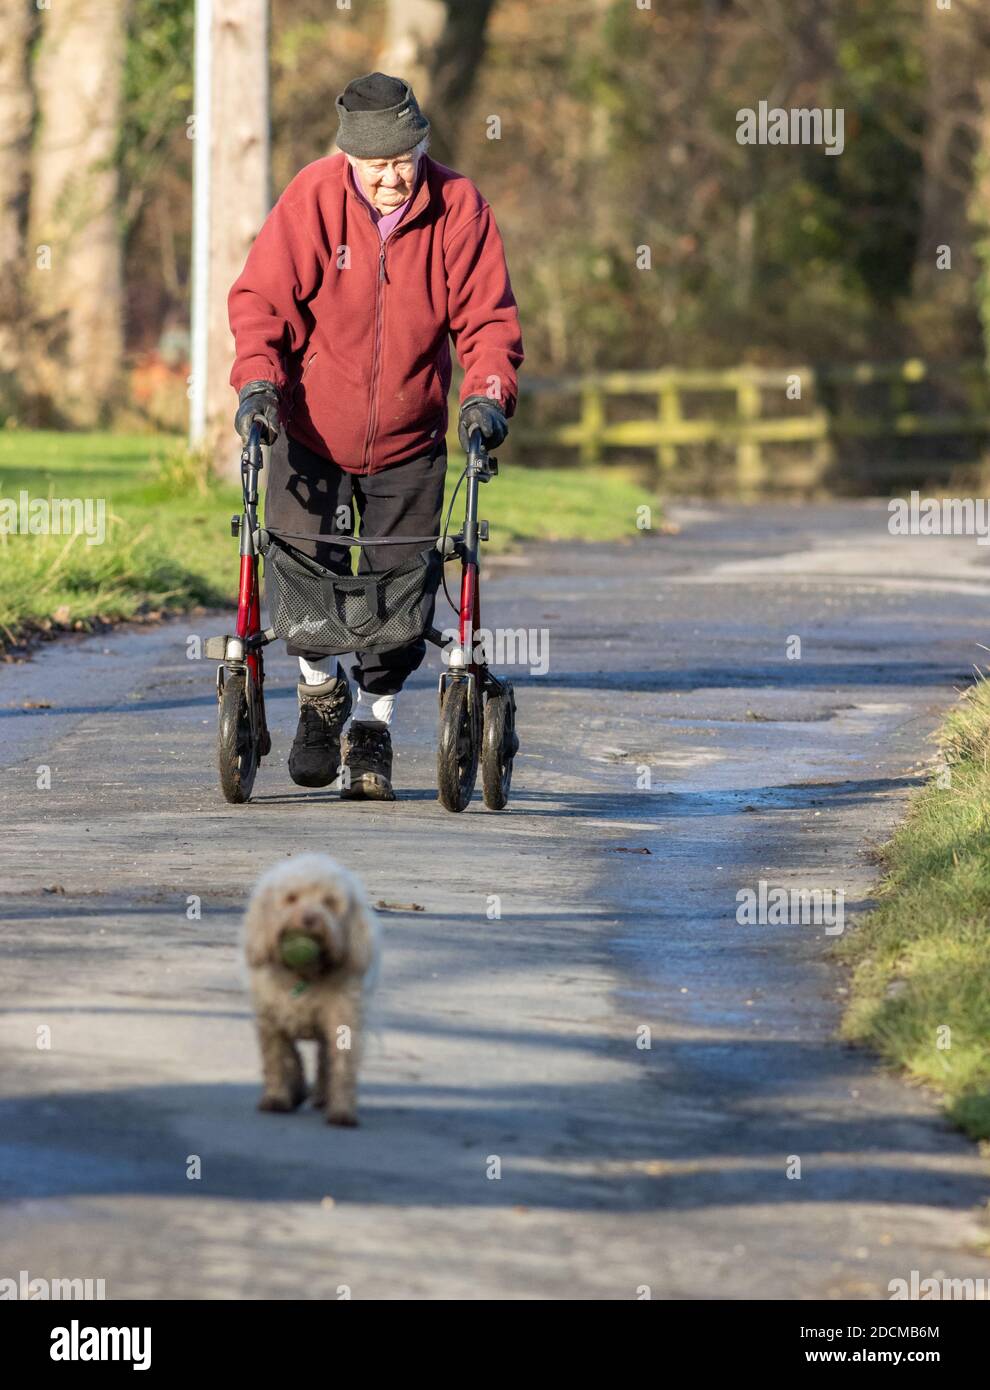 Senior Person, die Übung mit einem Rollator Mobilität Walking Frame und zu Fuß einen Hund entlang einer ruhigen Landstraße, Großbritannien Stockfoto